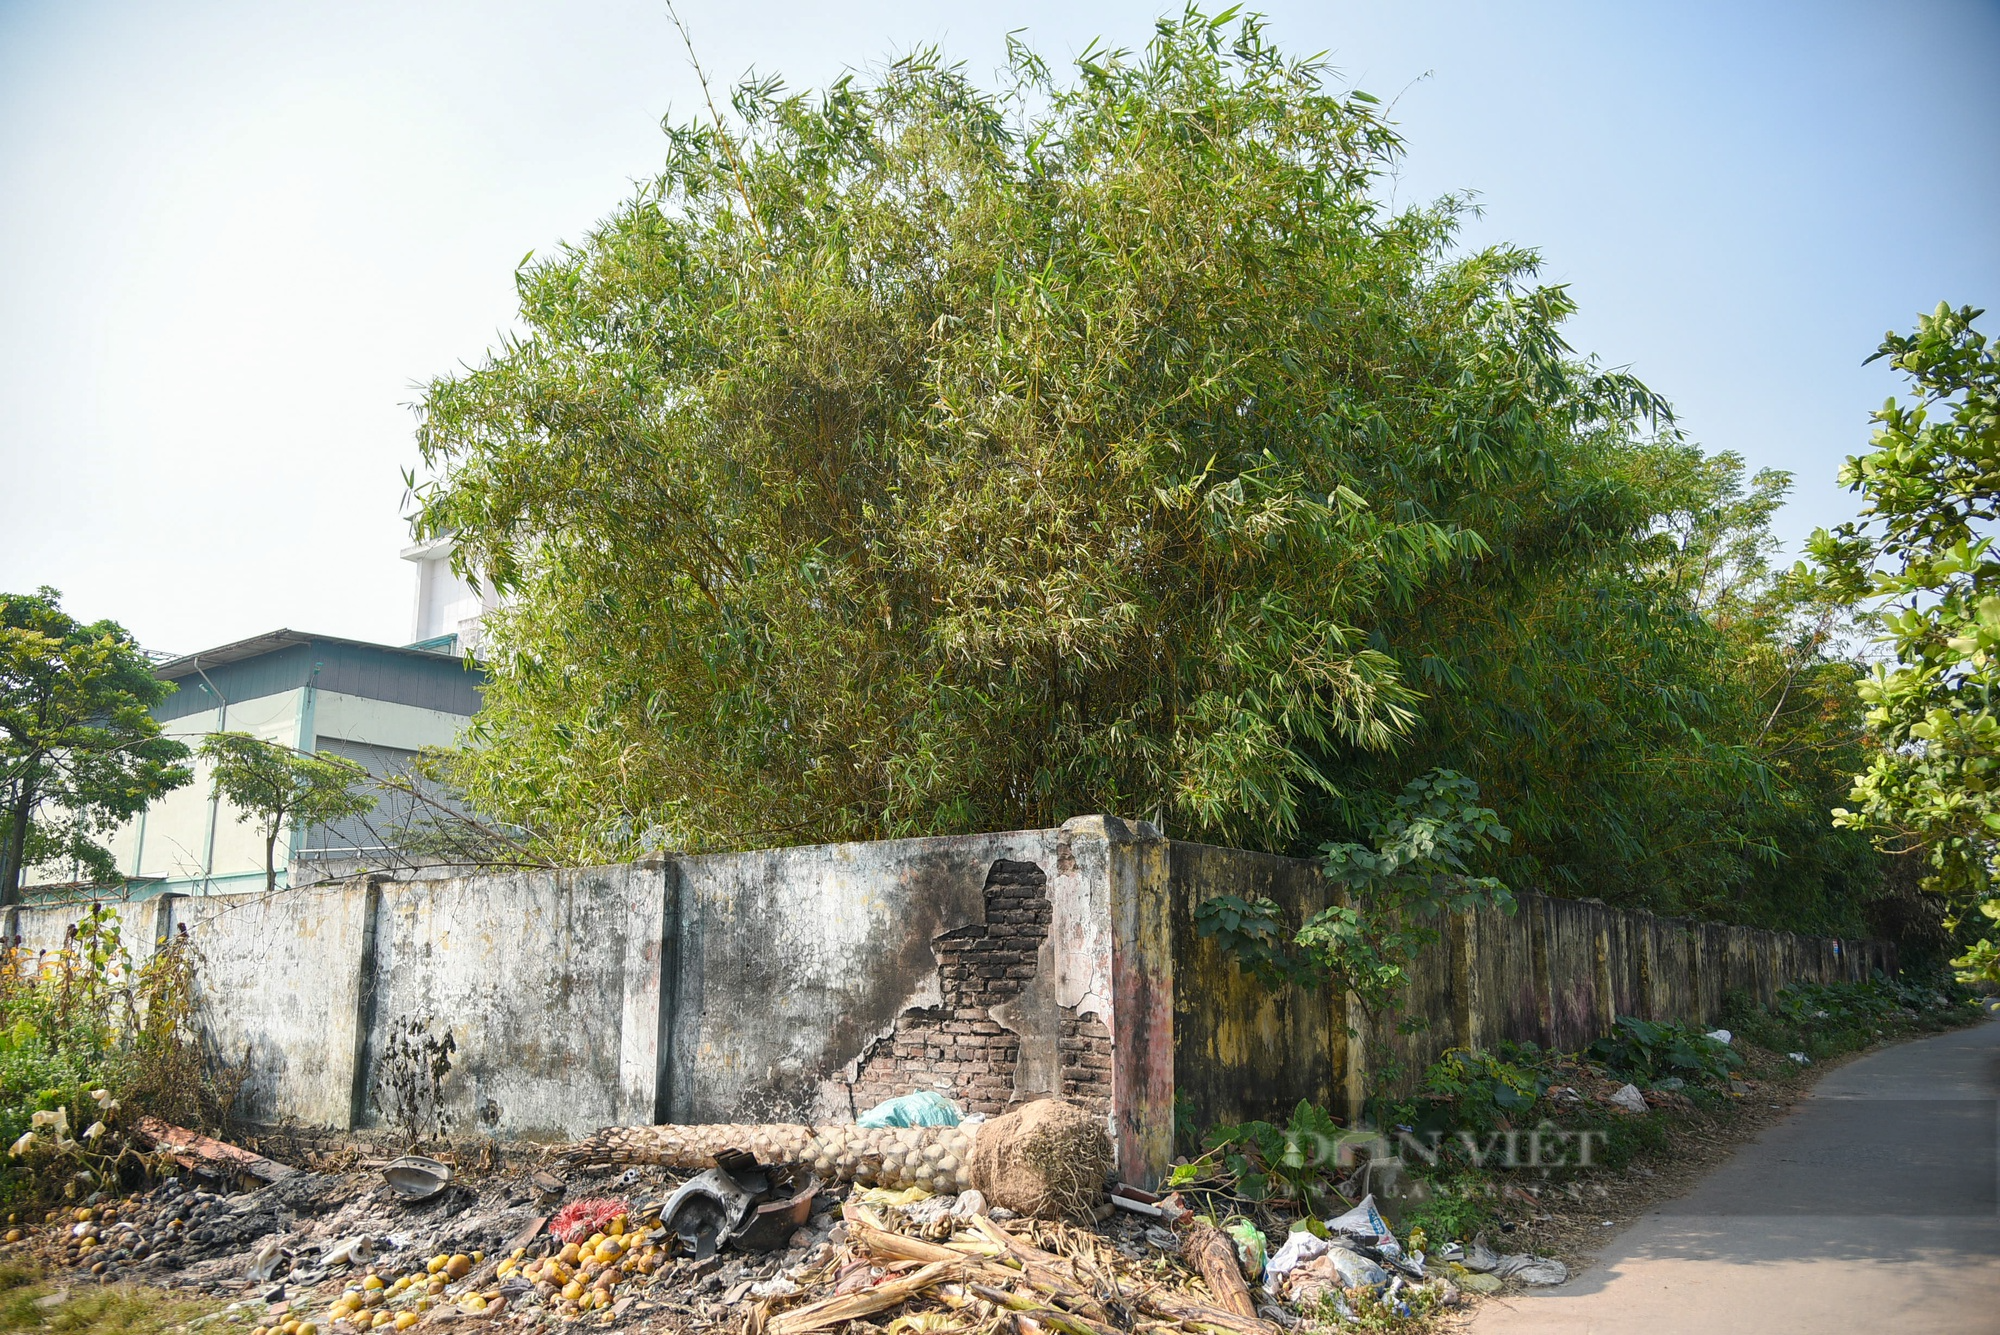 Toàn cảnh nhà máy rác trị giá hơn 200 tỉ bỏ hoang ở Hà Nội - Ảnh 12.